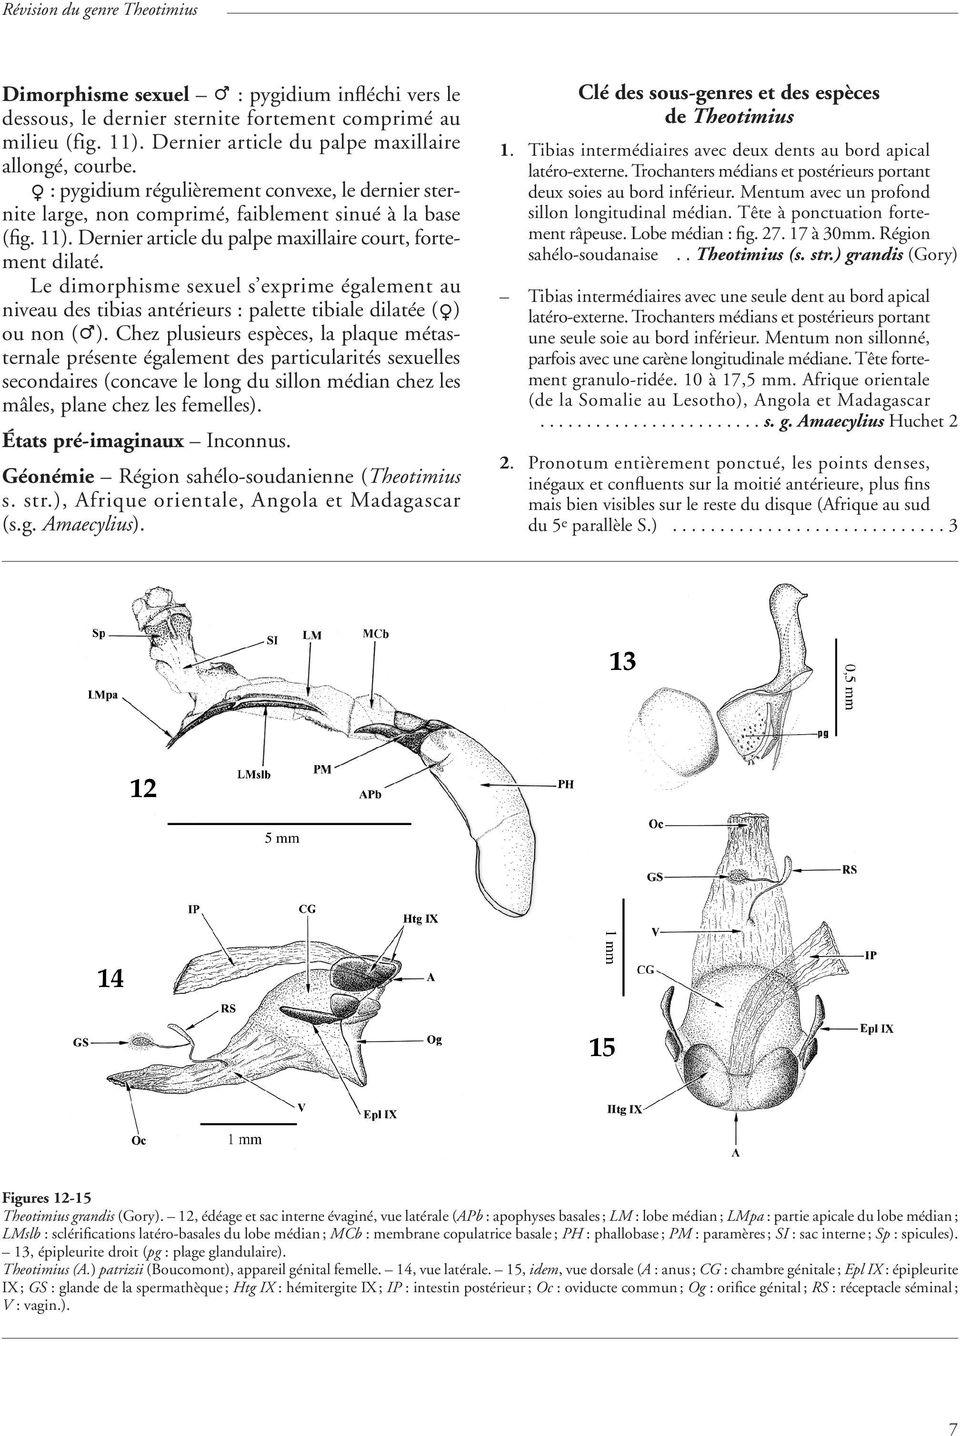 Le dimorphisme sexuel s exprime également au niveau des tibias antérieurs : palette tibiale dilatée (O) ou non (P).